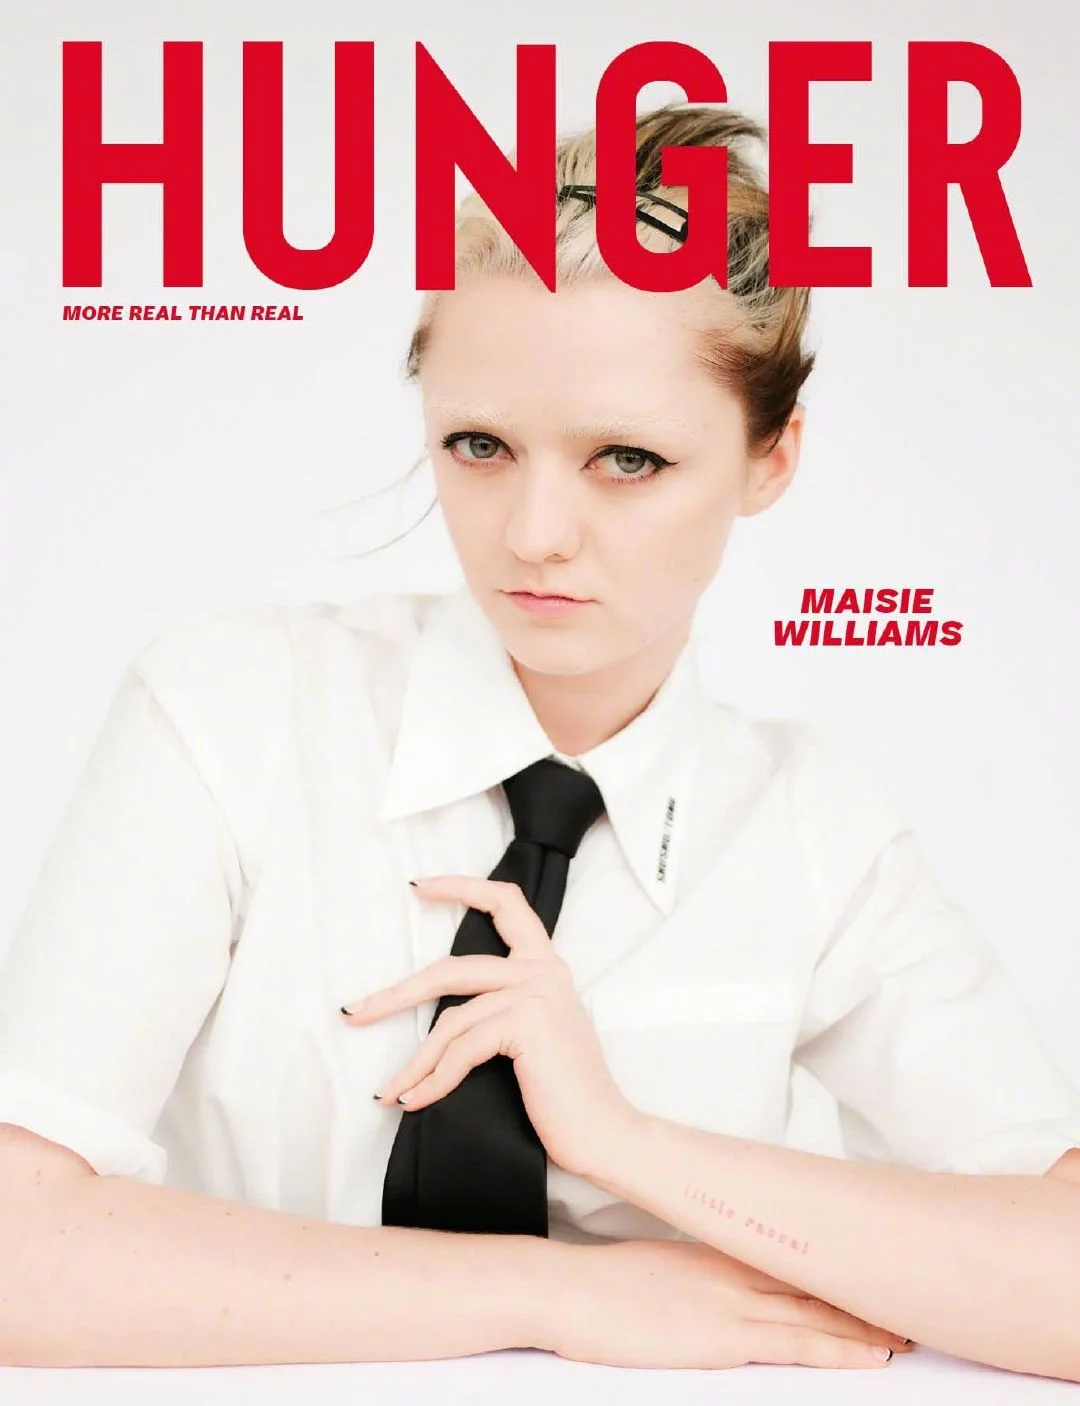 Maisie Williams, "Hunger" magazine new photo